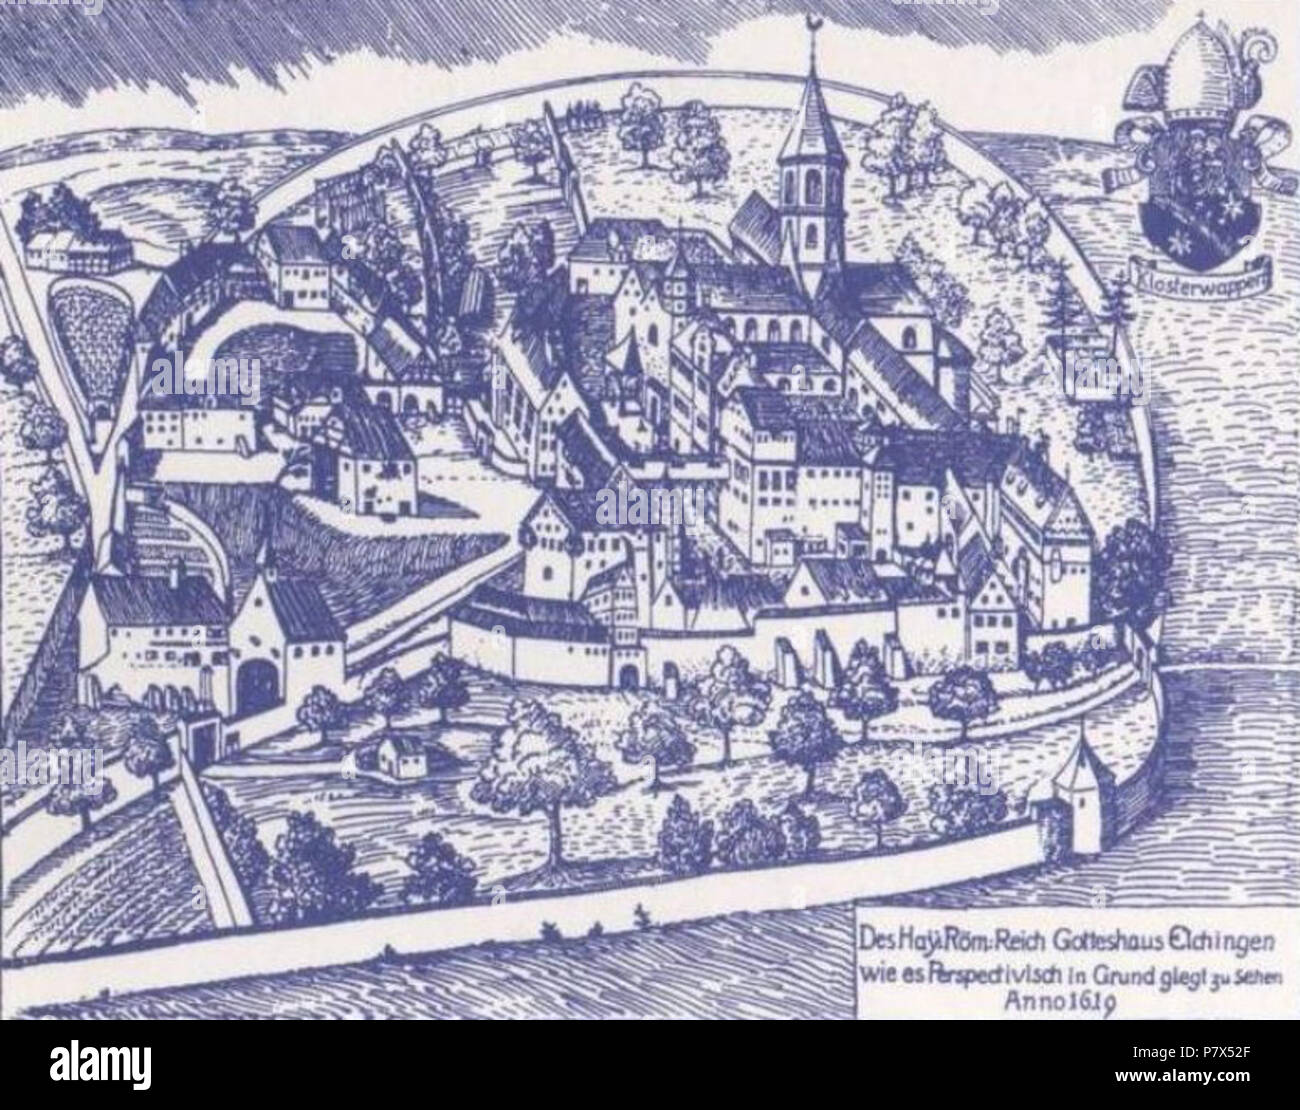 Anglais : principaux bâtiments de l'abbaye d'Elchingen. Cette abbaye a été l'un des 40 abbayes de l'Empire romain saint - Rupture de plus d'un millier d'abbayes et monastères - qui était l'objet, l'état d'une Abbaye impériale. Le territoire de l'abbaye s'étendait bien au-delà du monastère comme tels et inclus des dizaines de villages et des milliers de sujets. Comme les autres abbés impériale, l'Abbé d'Elchingen est maître absolu qui avaient 'voix' et manger à la diète impériale. Portrait d'une carte postale de 1920 ou 1930. 2 août 2013, 19:48:48 143 Abbaye Elchingen Banque D'Images